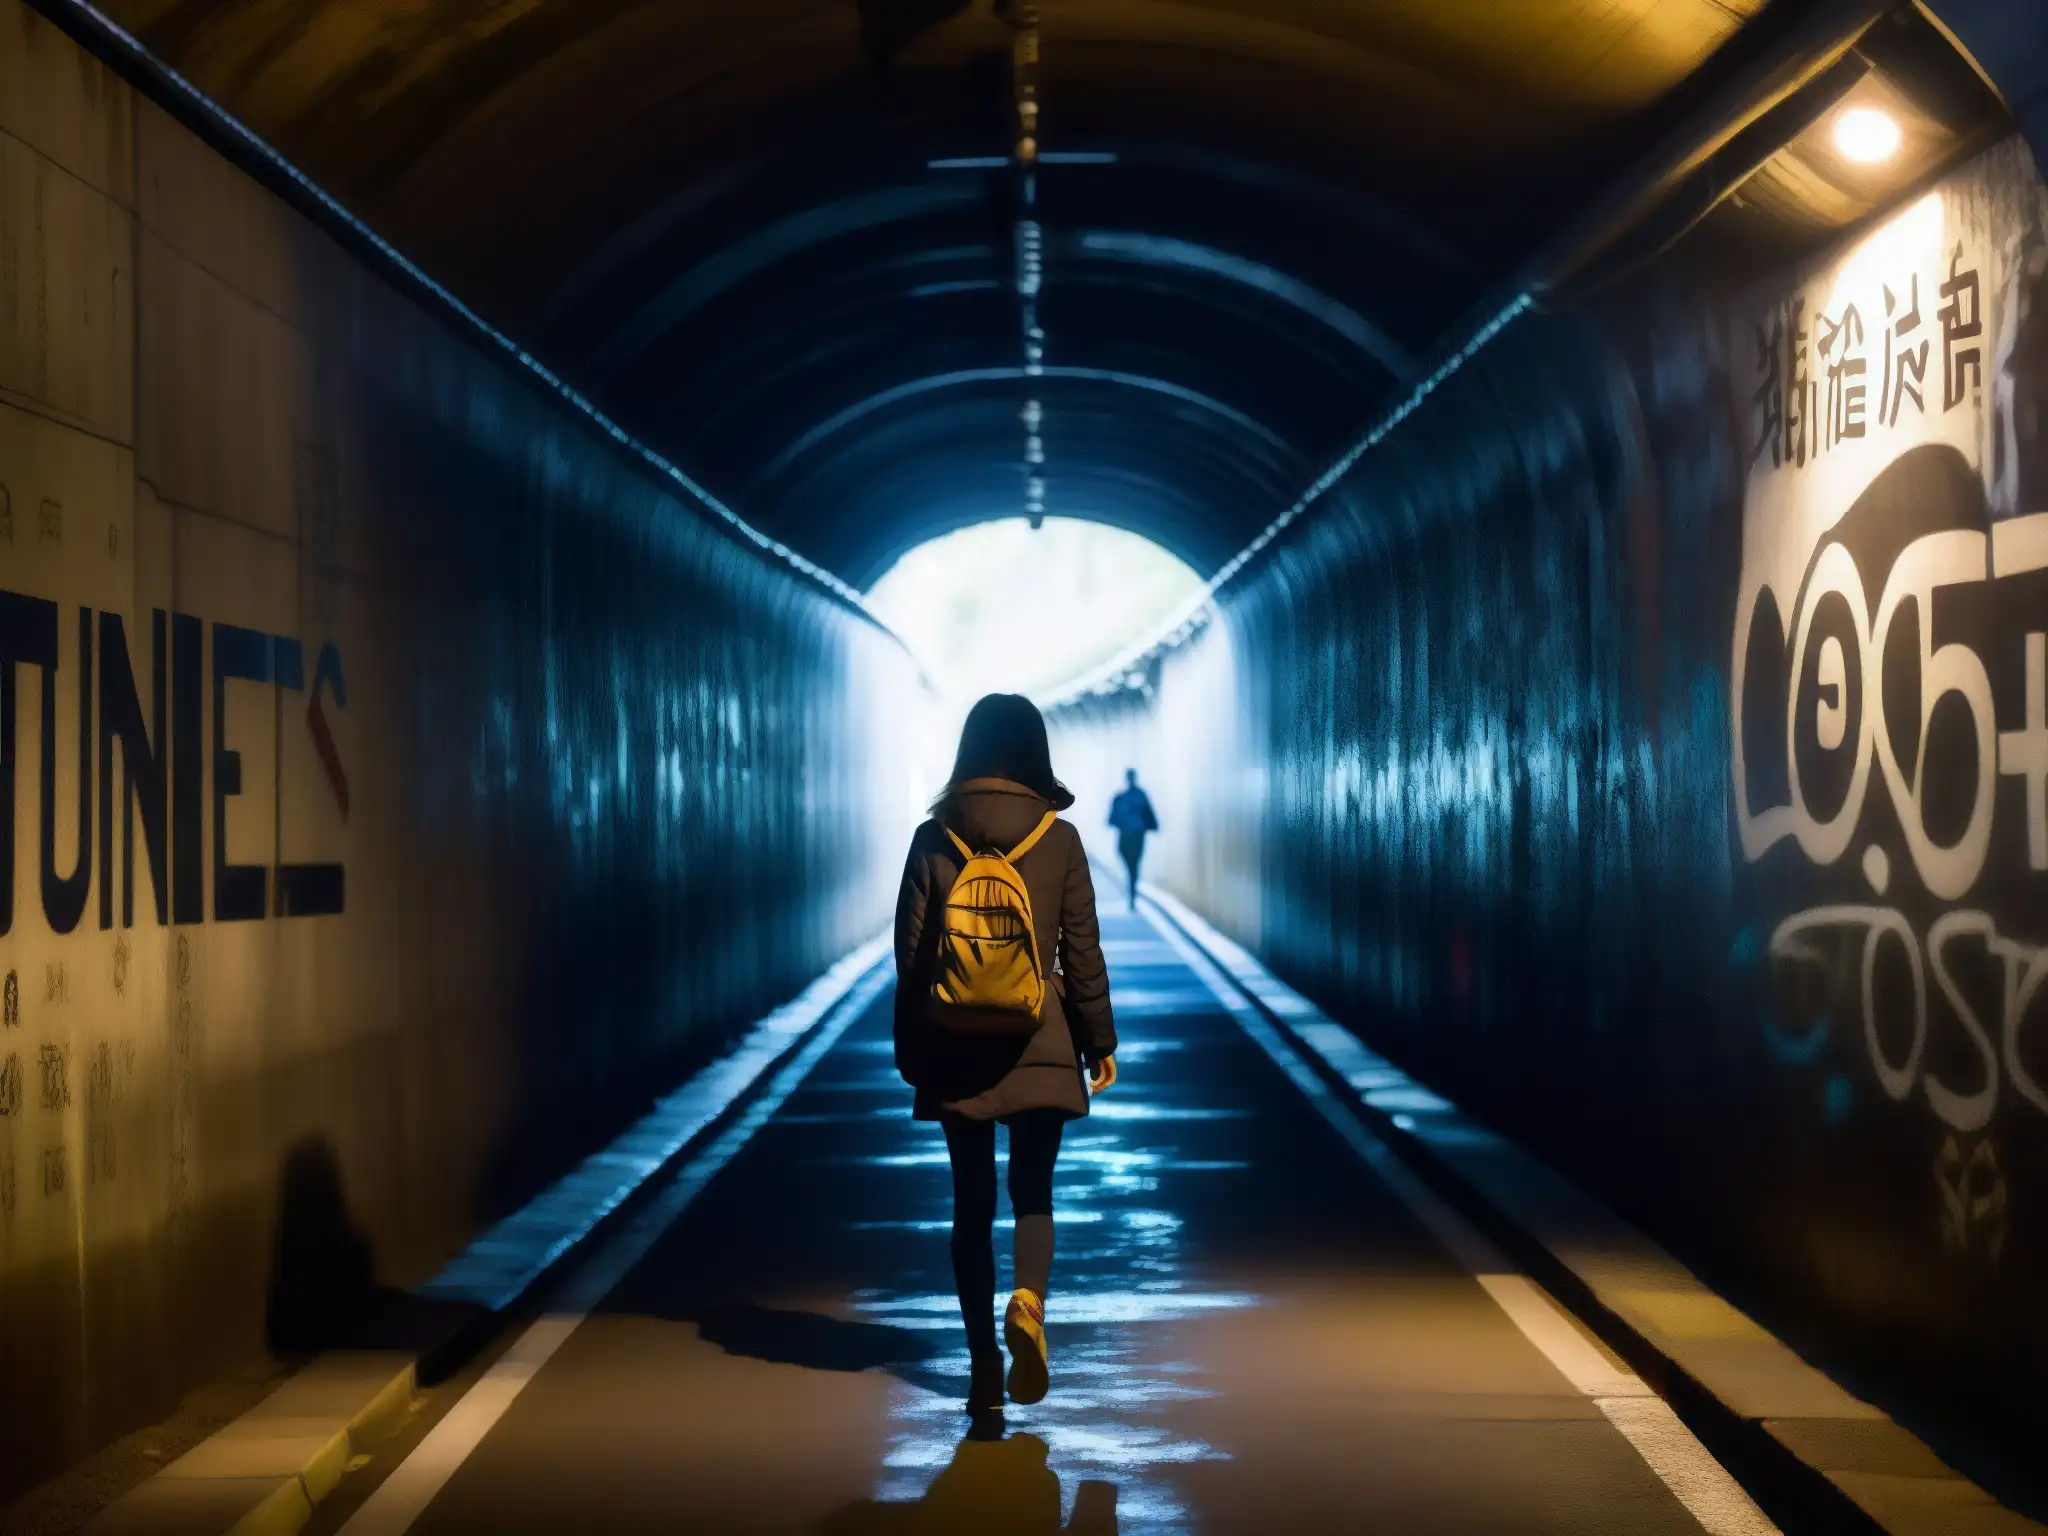 Un misterioso pasaje nocturno por el Túnel de Yamate, con grafitis de la legendaria Mujer del Túnel, y una figura solitaria entre sombras